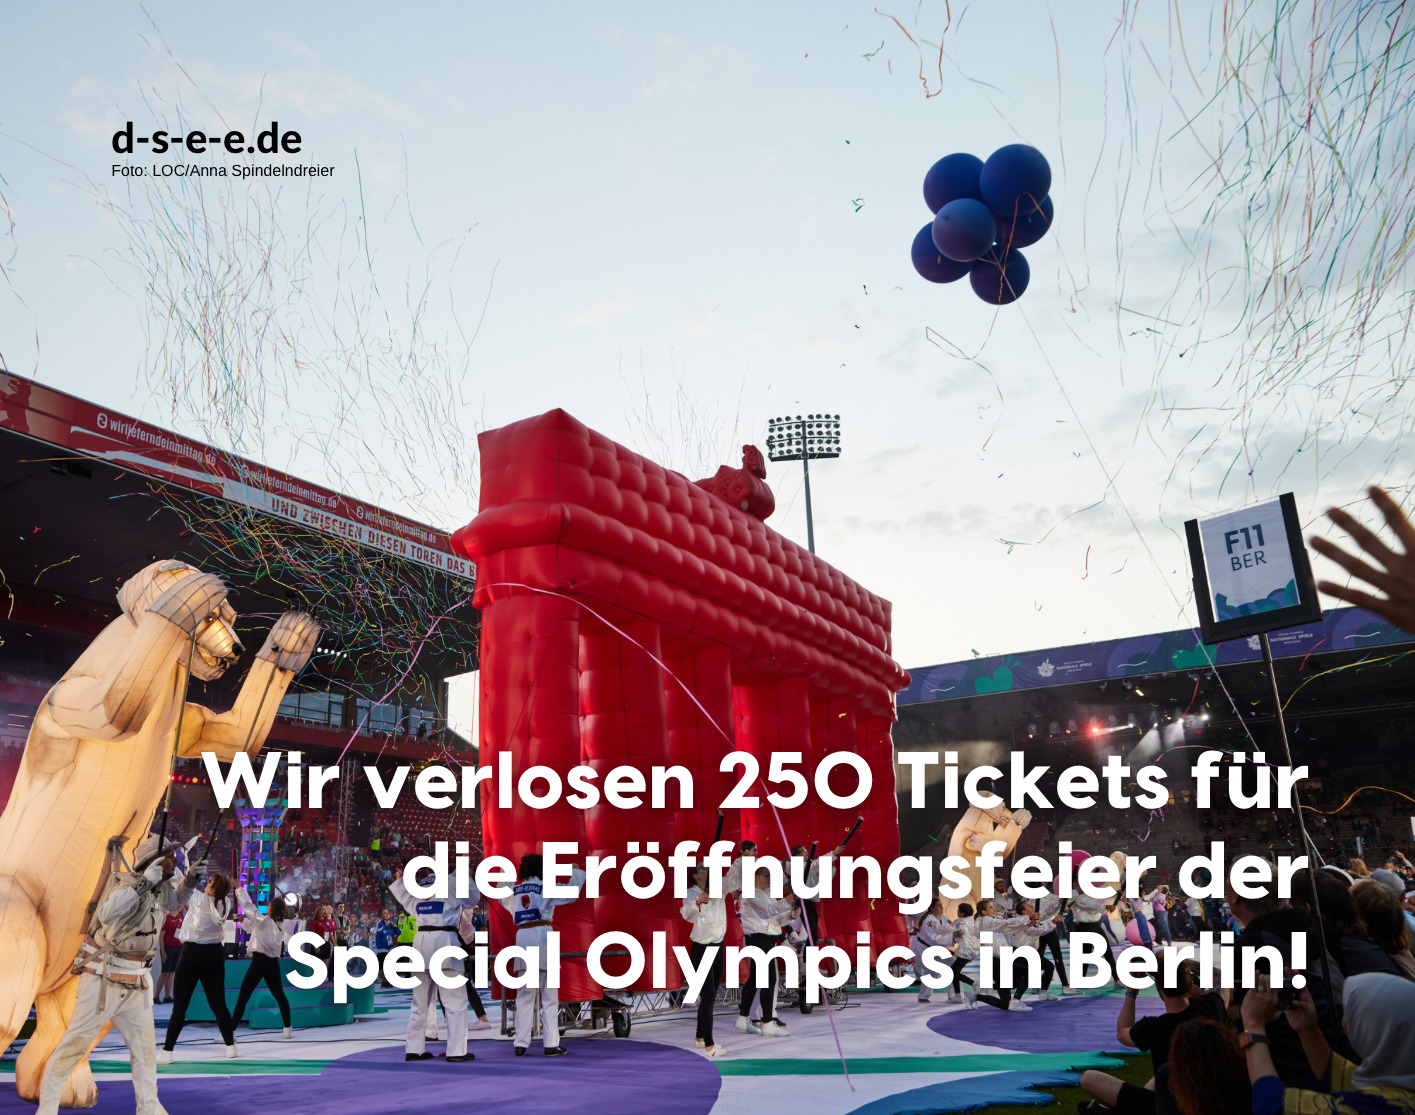 Foto von einer Eröffnungsfeier in Berlin mit dem Text: Wir verlosen 250 Tickets für die Eröffnungsfeier der Special Olympics in Berlin!